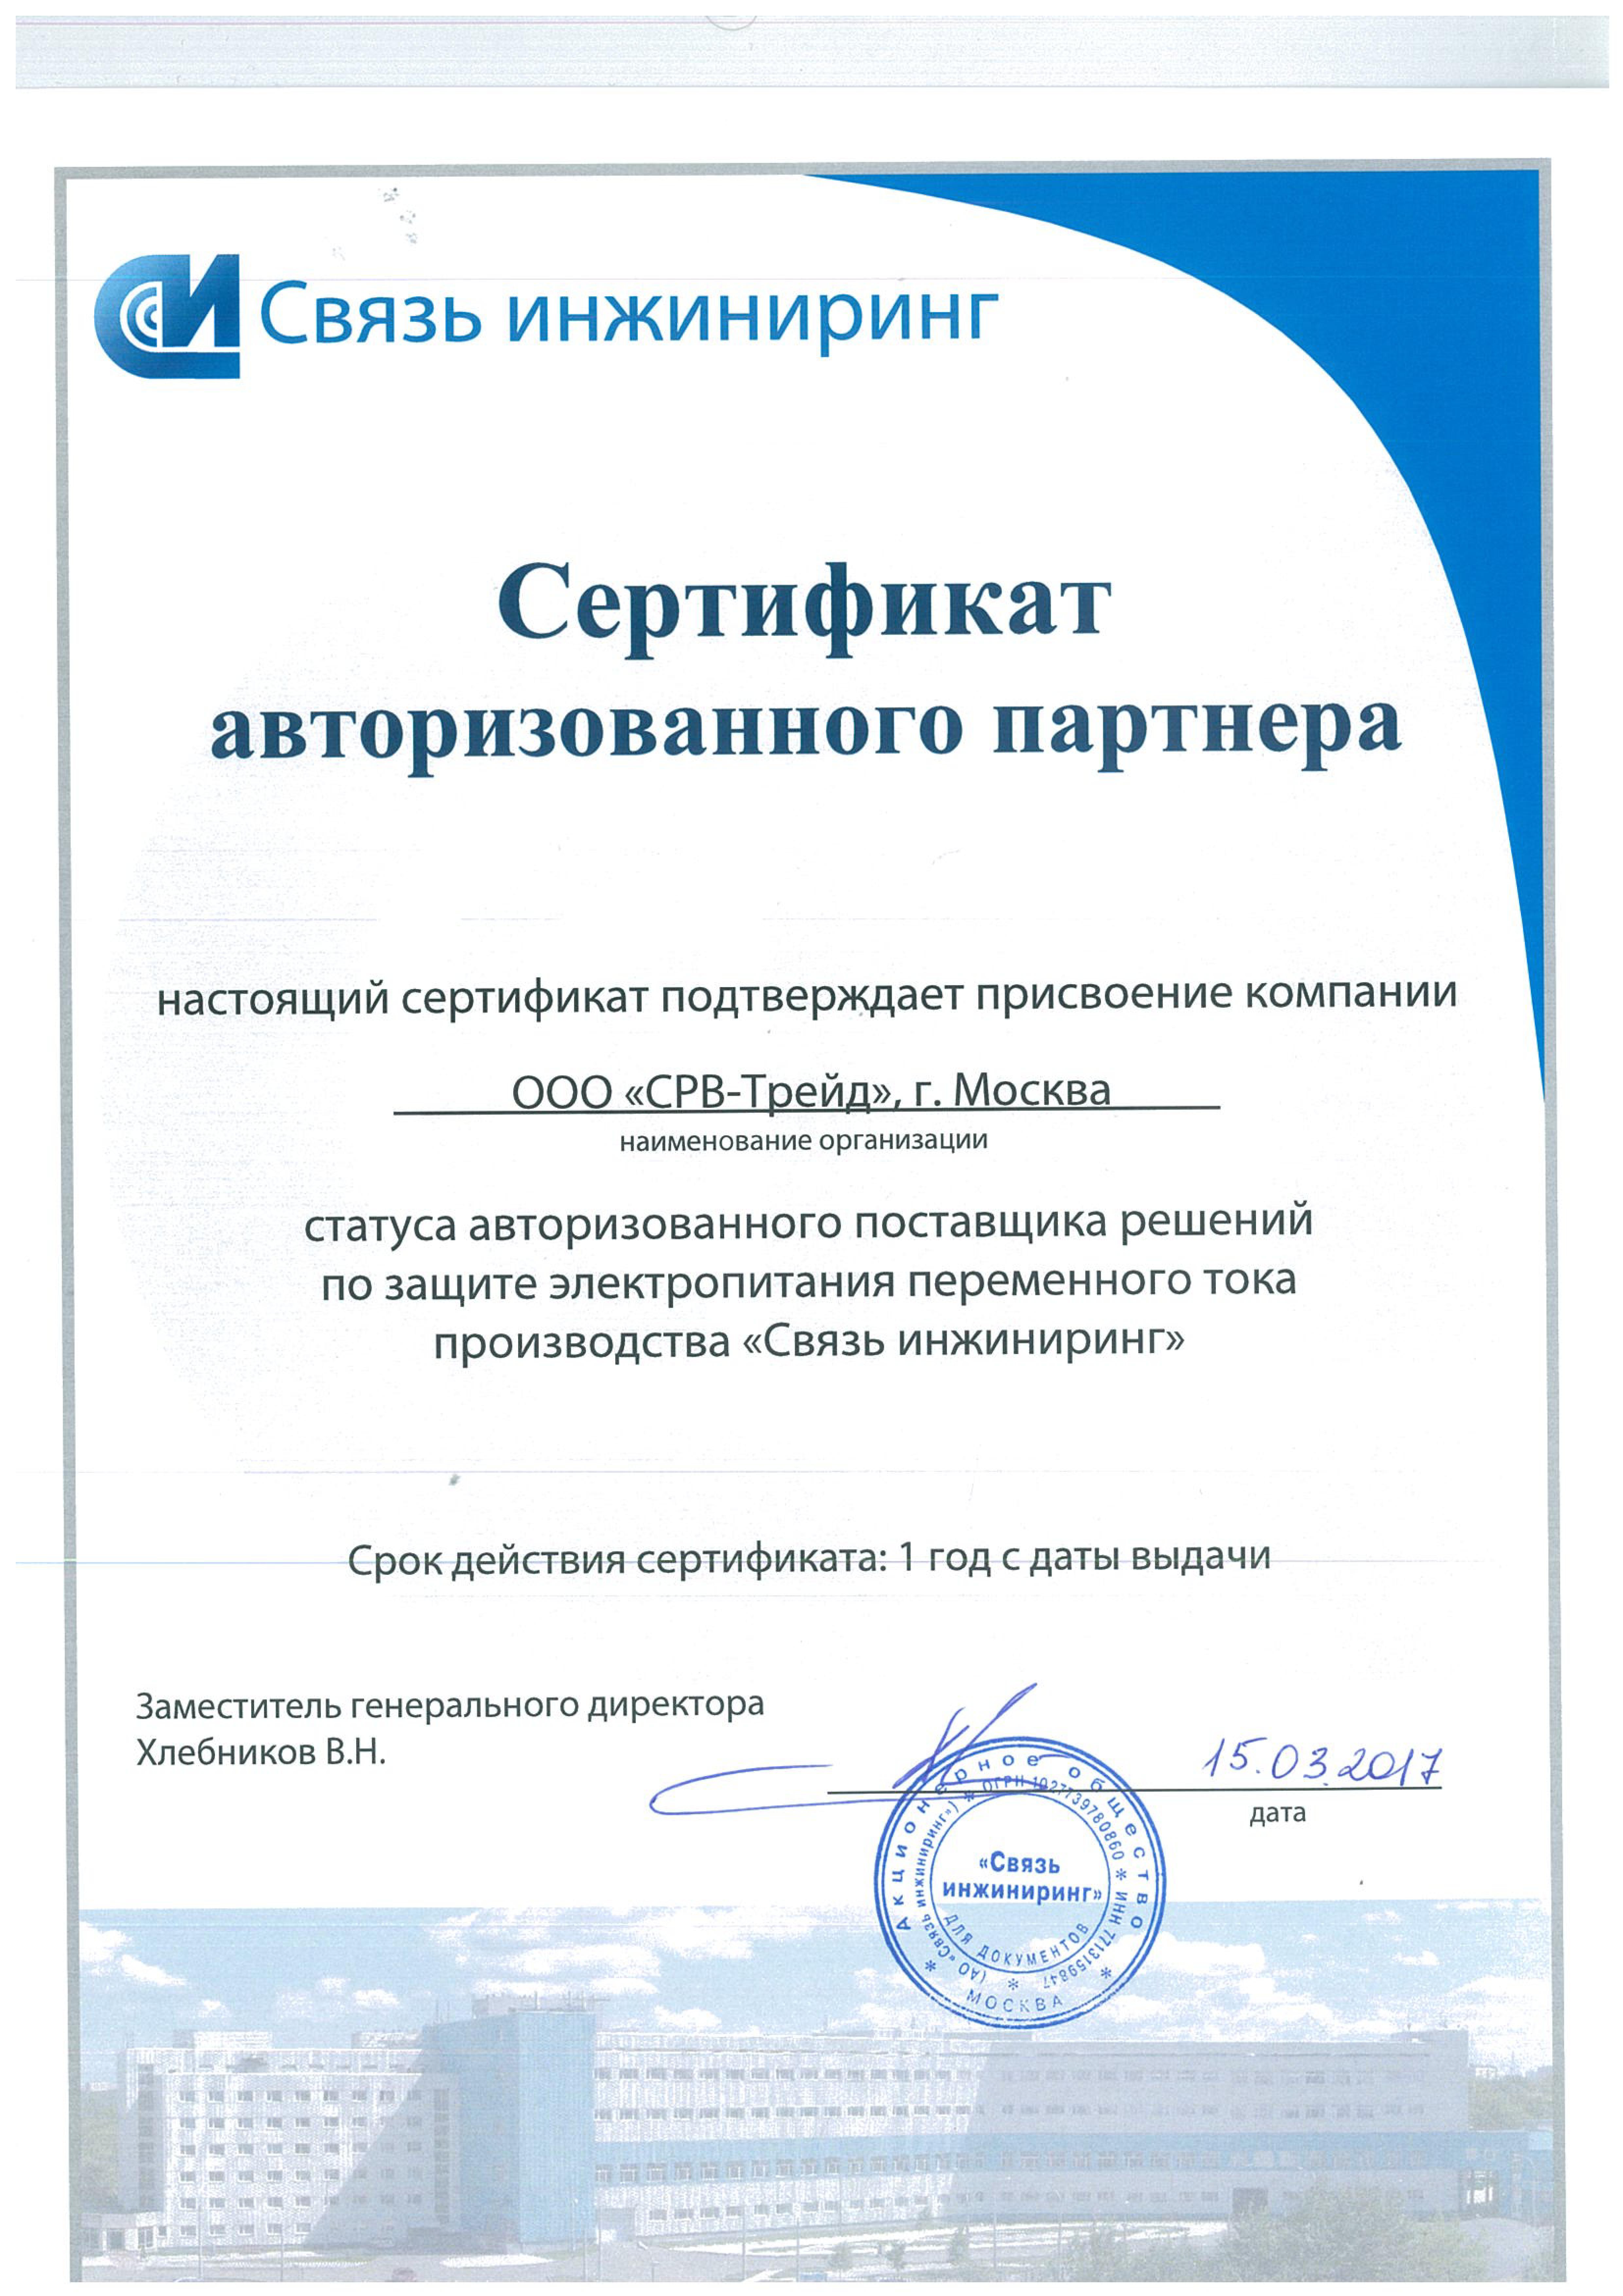 Сертификат SRV-TRADE как партнера Связь инжиниринг